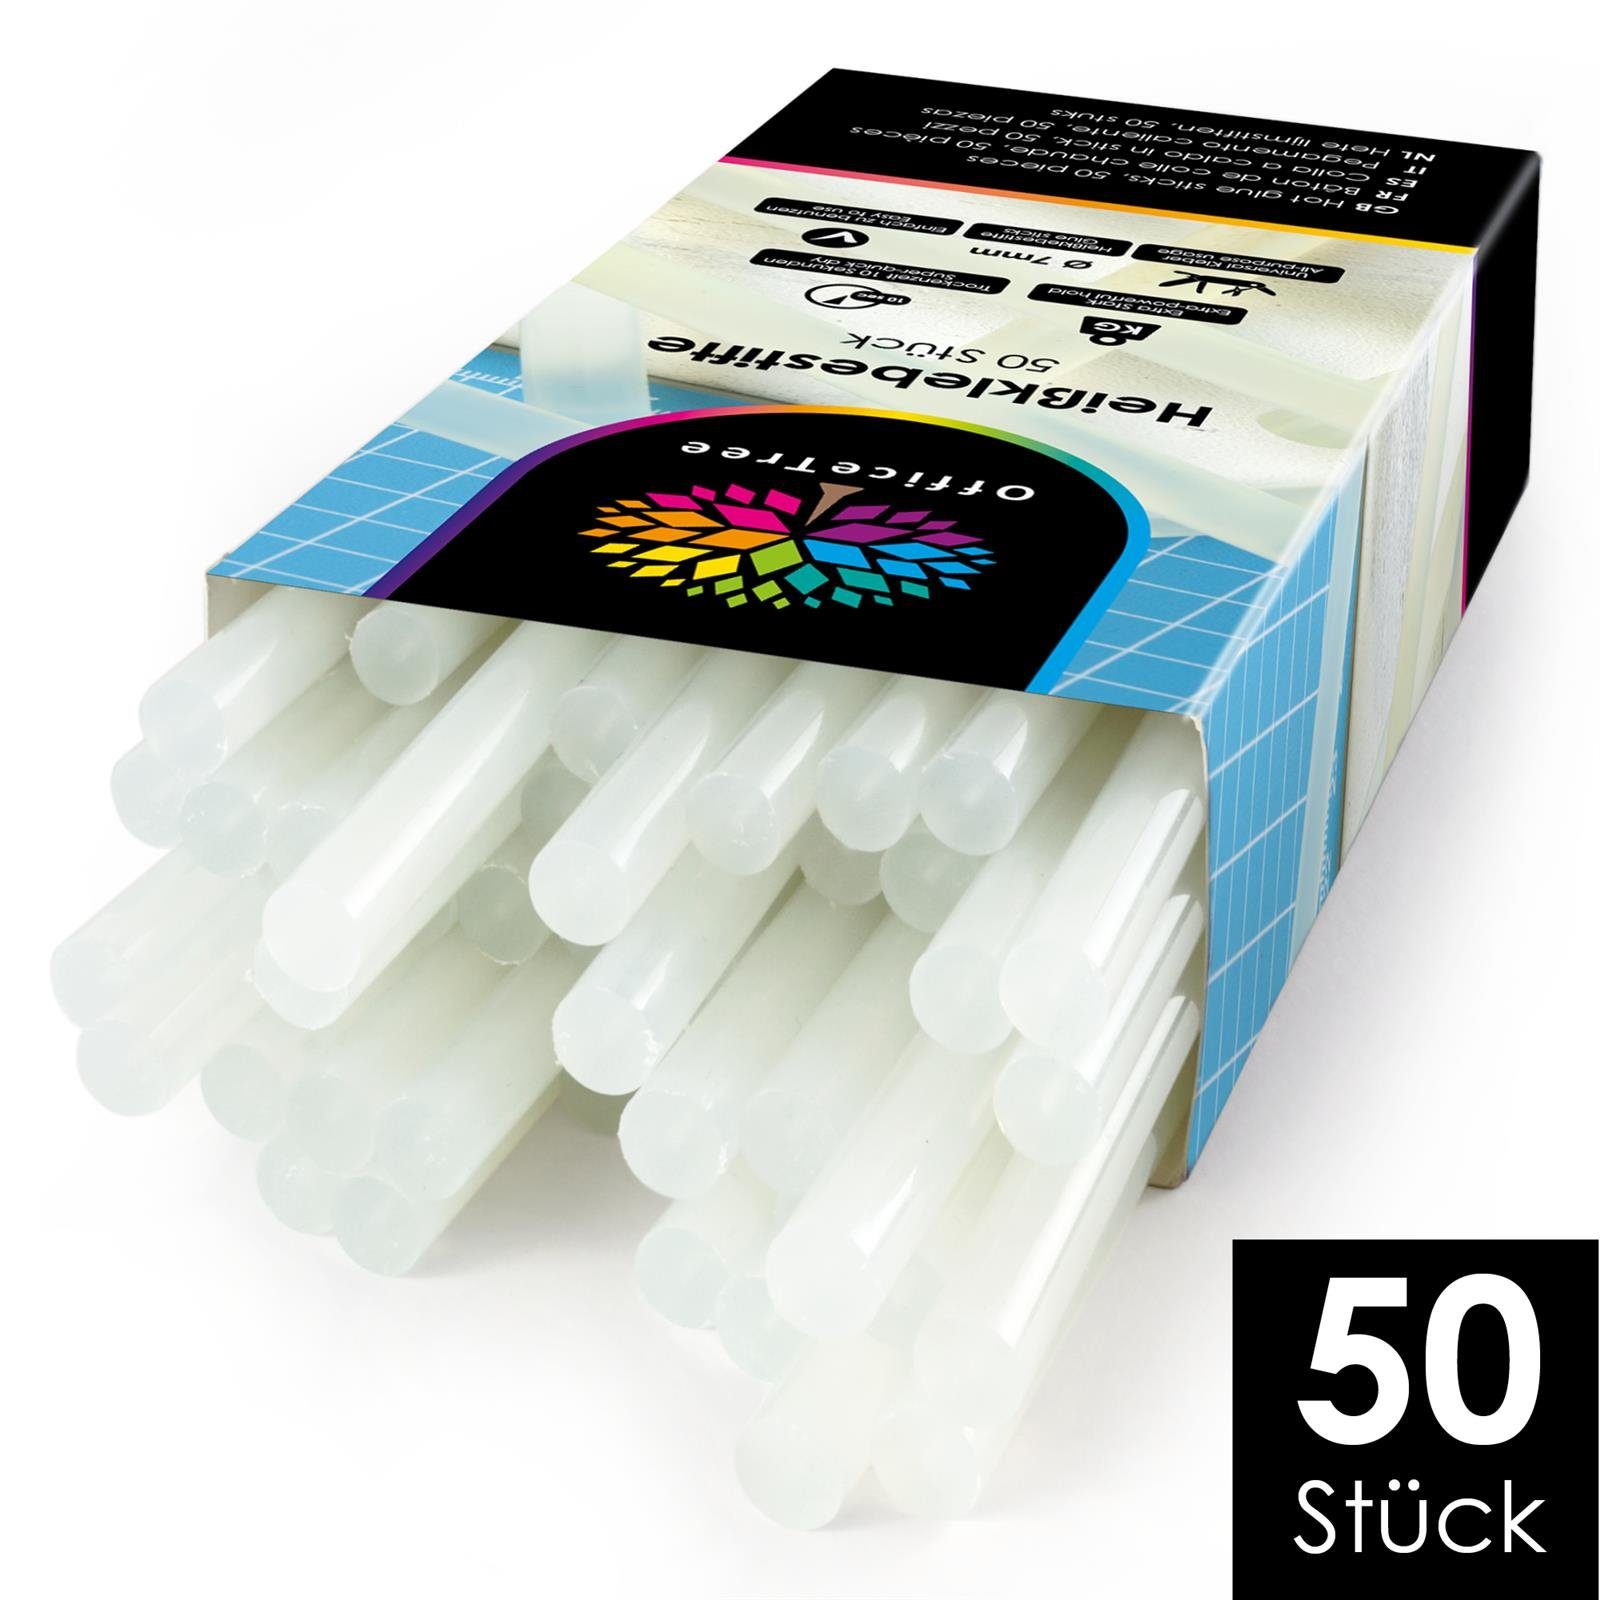 OfficeTree Heißklebestift 50 Heißklebesticks 7 mm x 150 mm, (50er Set),  Extra Power Klebstoff für gängige Heißklebepistolen